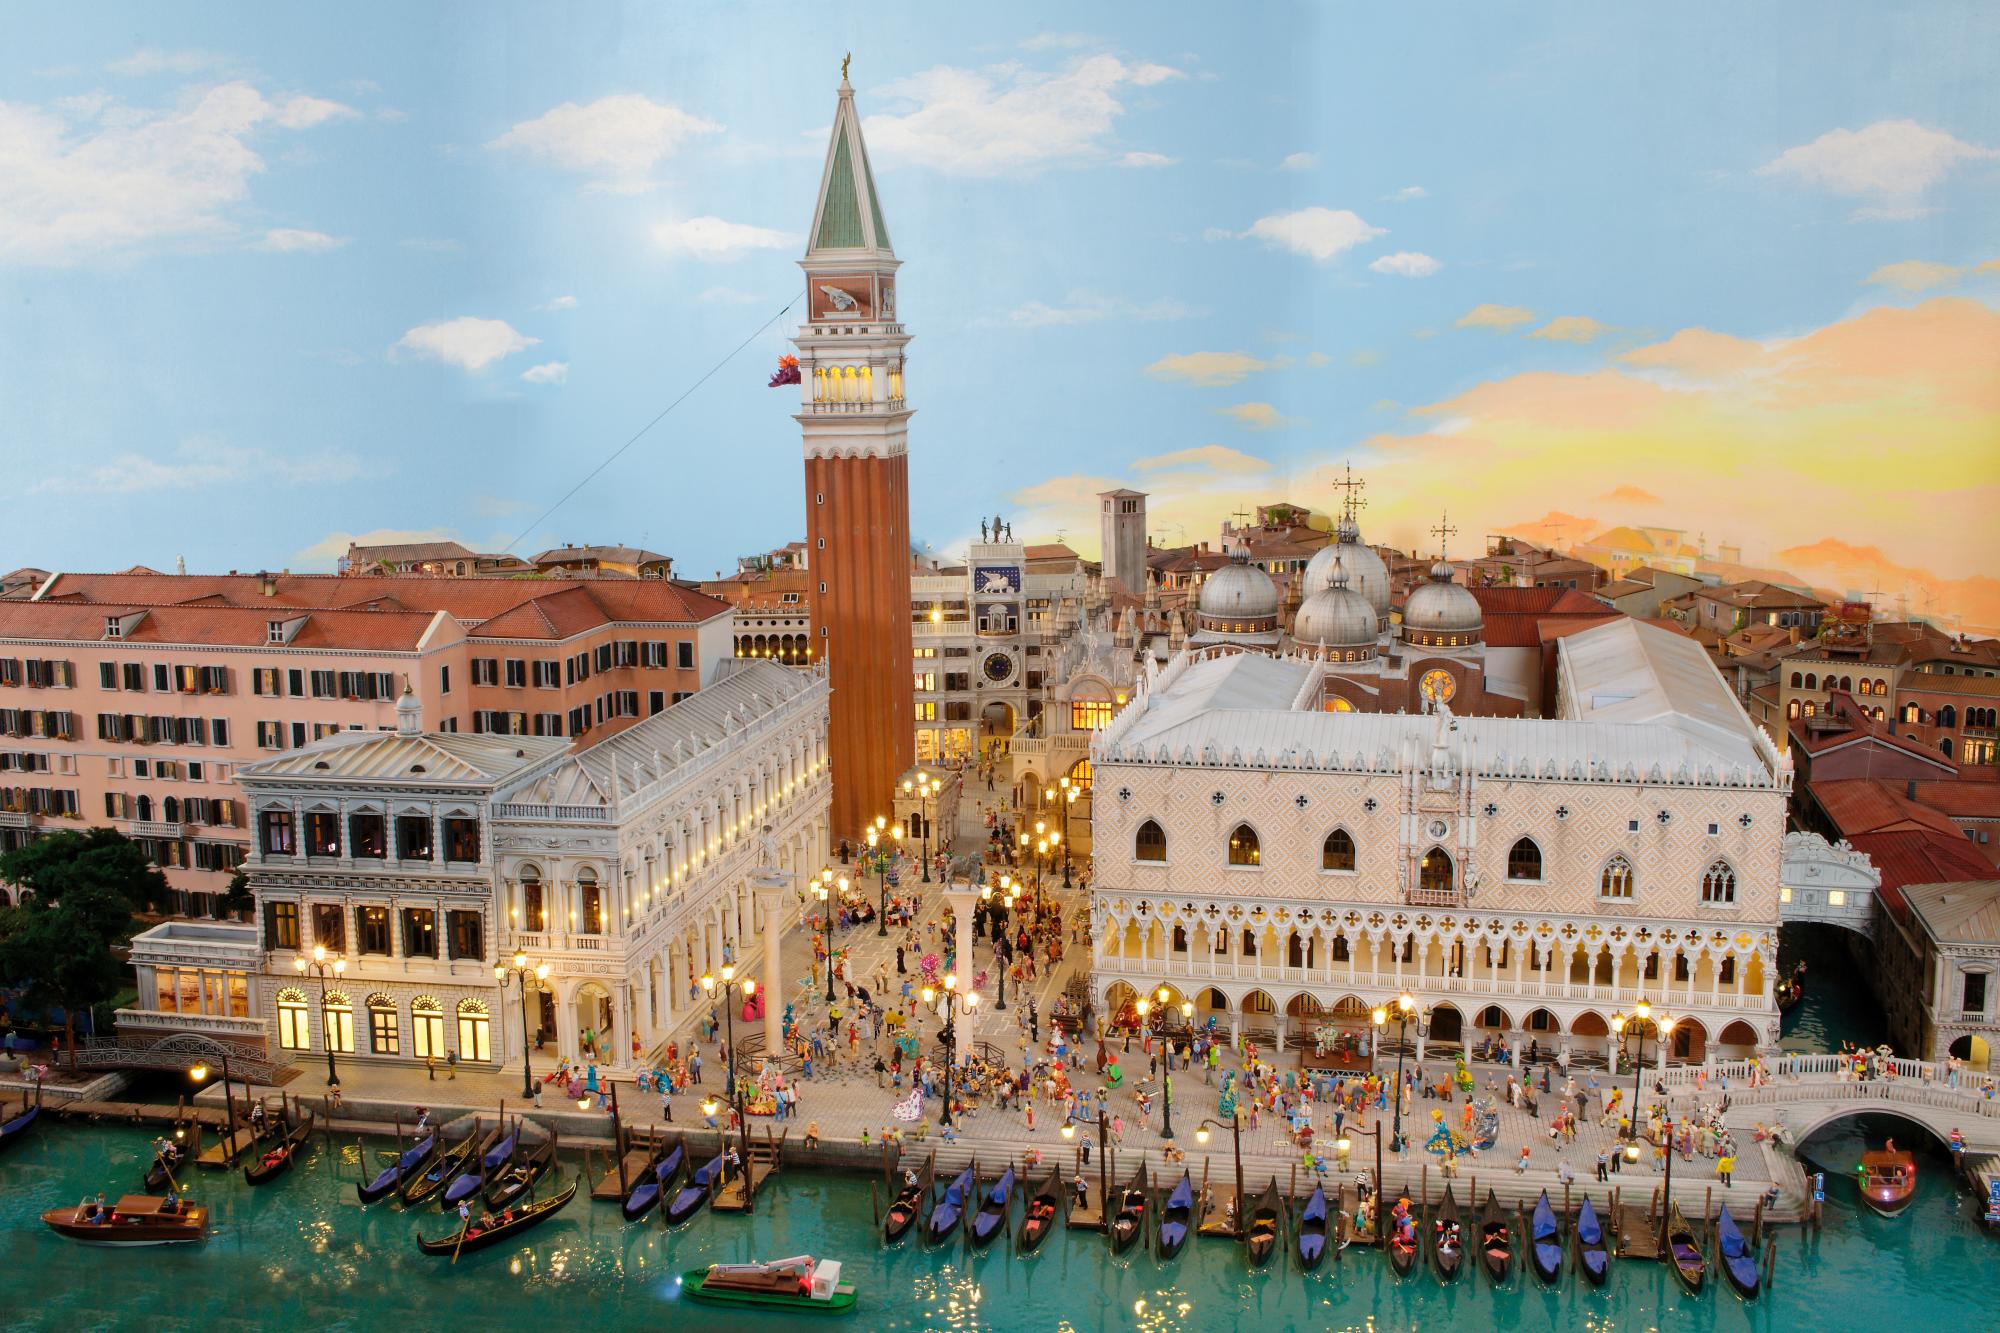 Impresionante maqueta de la ciudad de Venecia con sus principales monumentos pormenorizados.